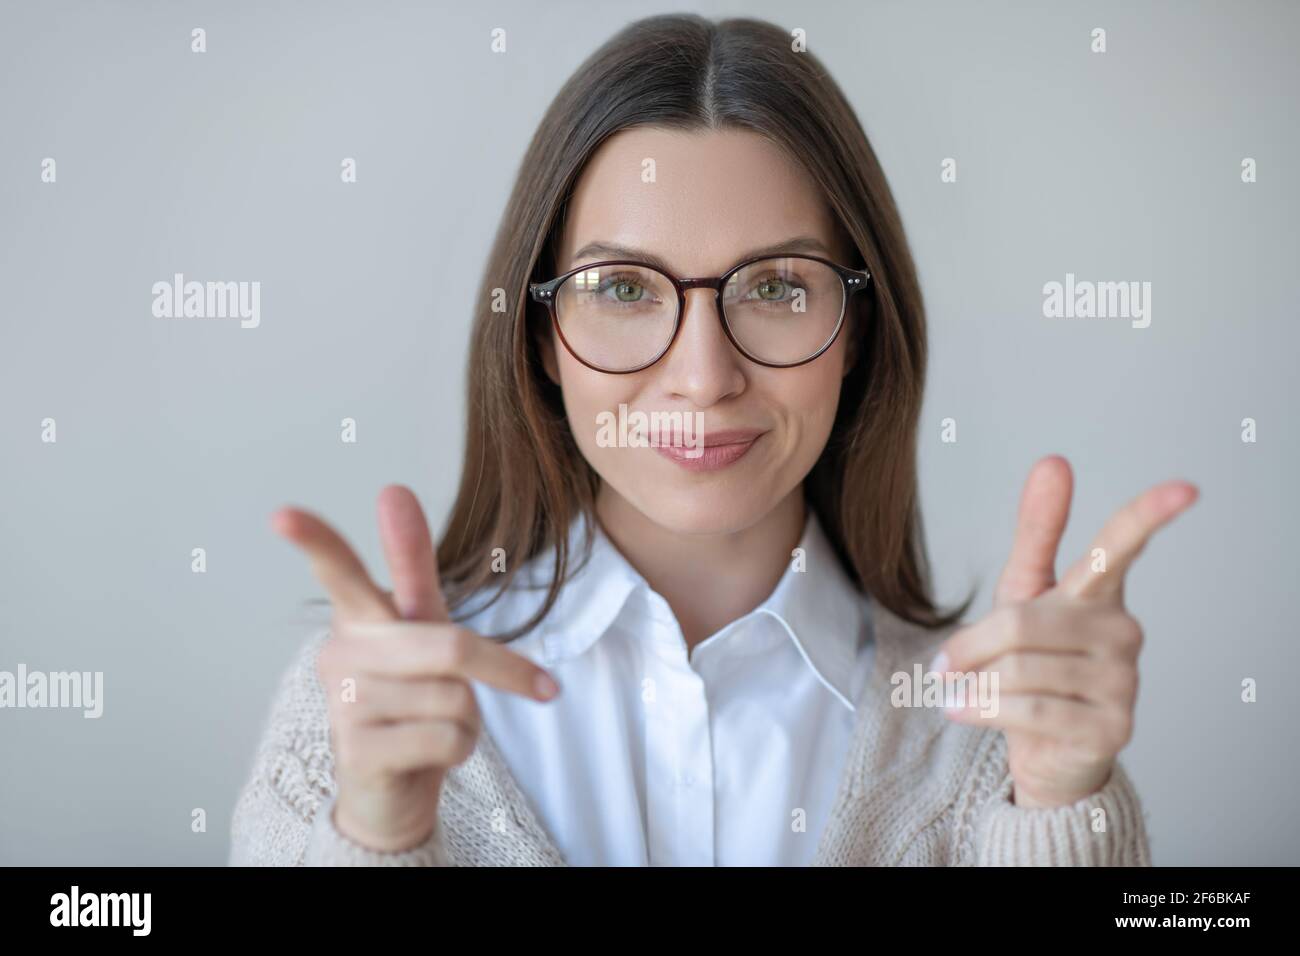 Image de la taille haute de la femme à cheveux longs dans les lunettes de vue regardant confiant Banque D'Images